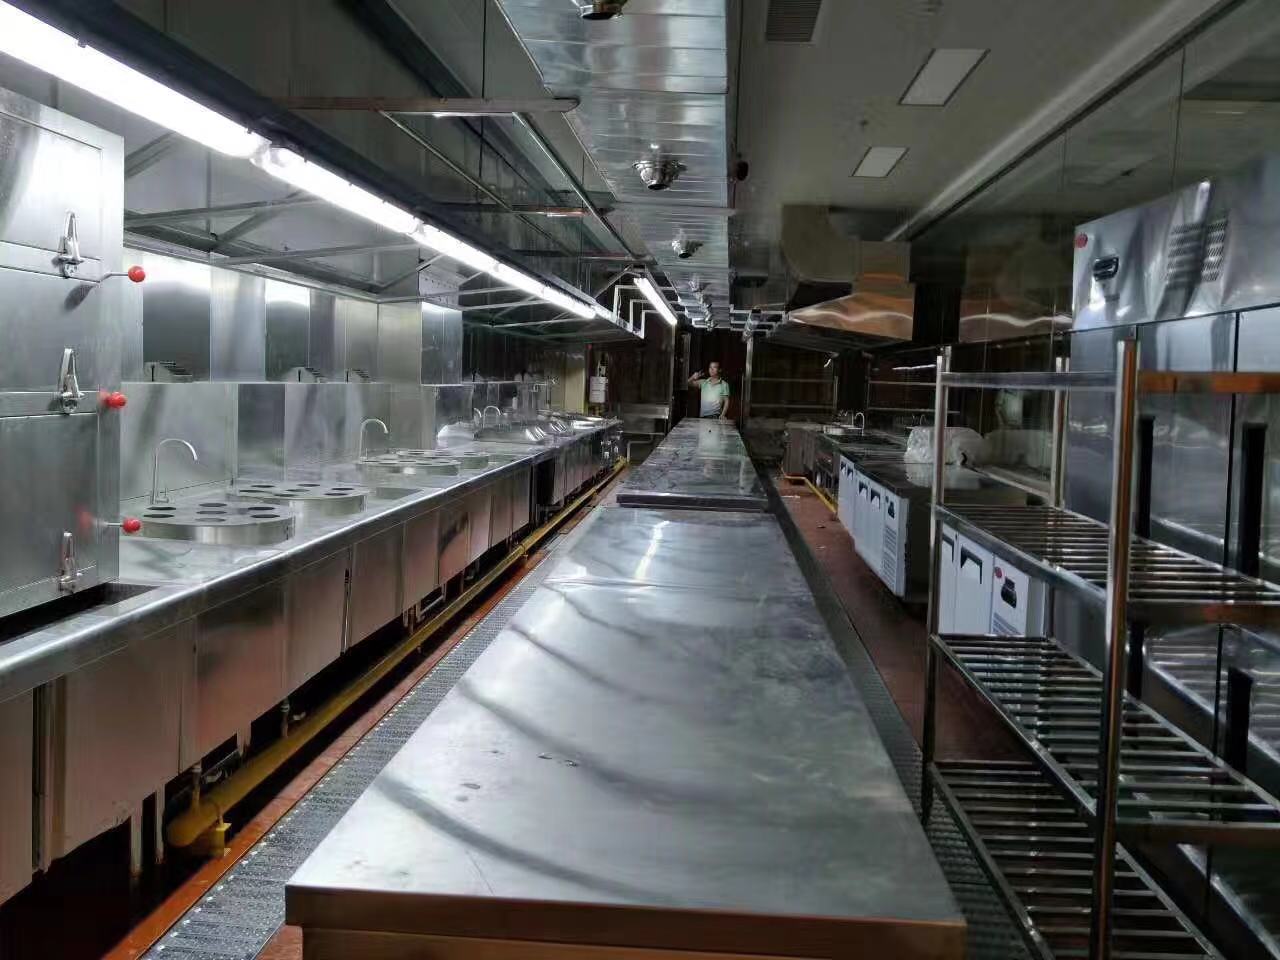 广州雍隆厨房设备有限公司基于新冠肺炎疫情个别员工推迟开工告示